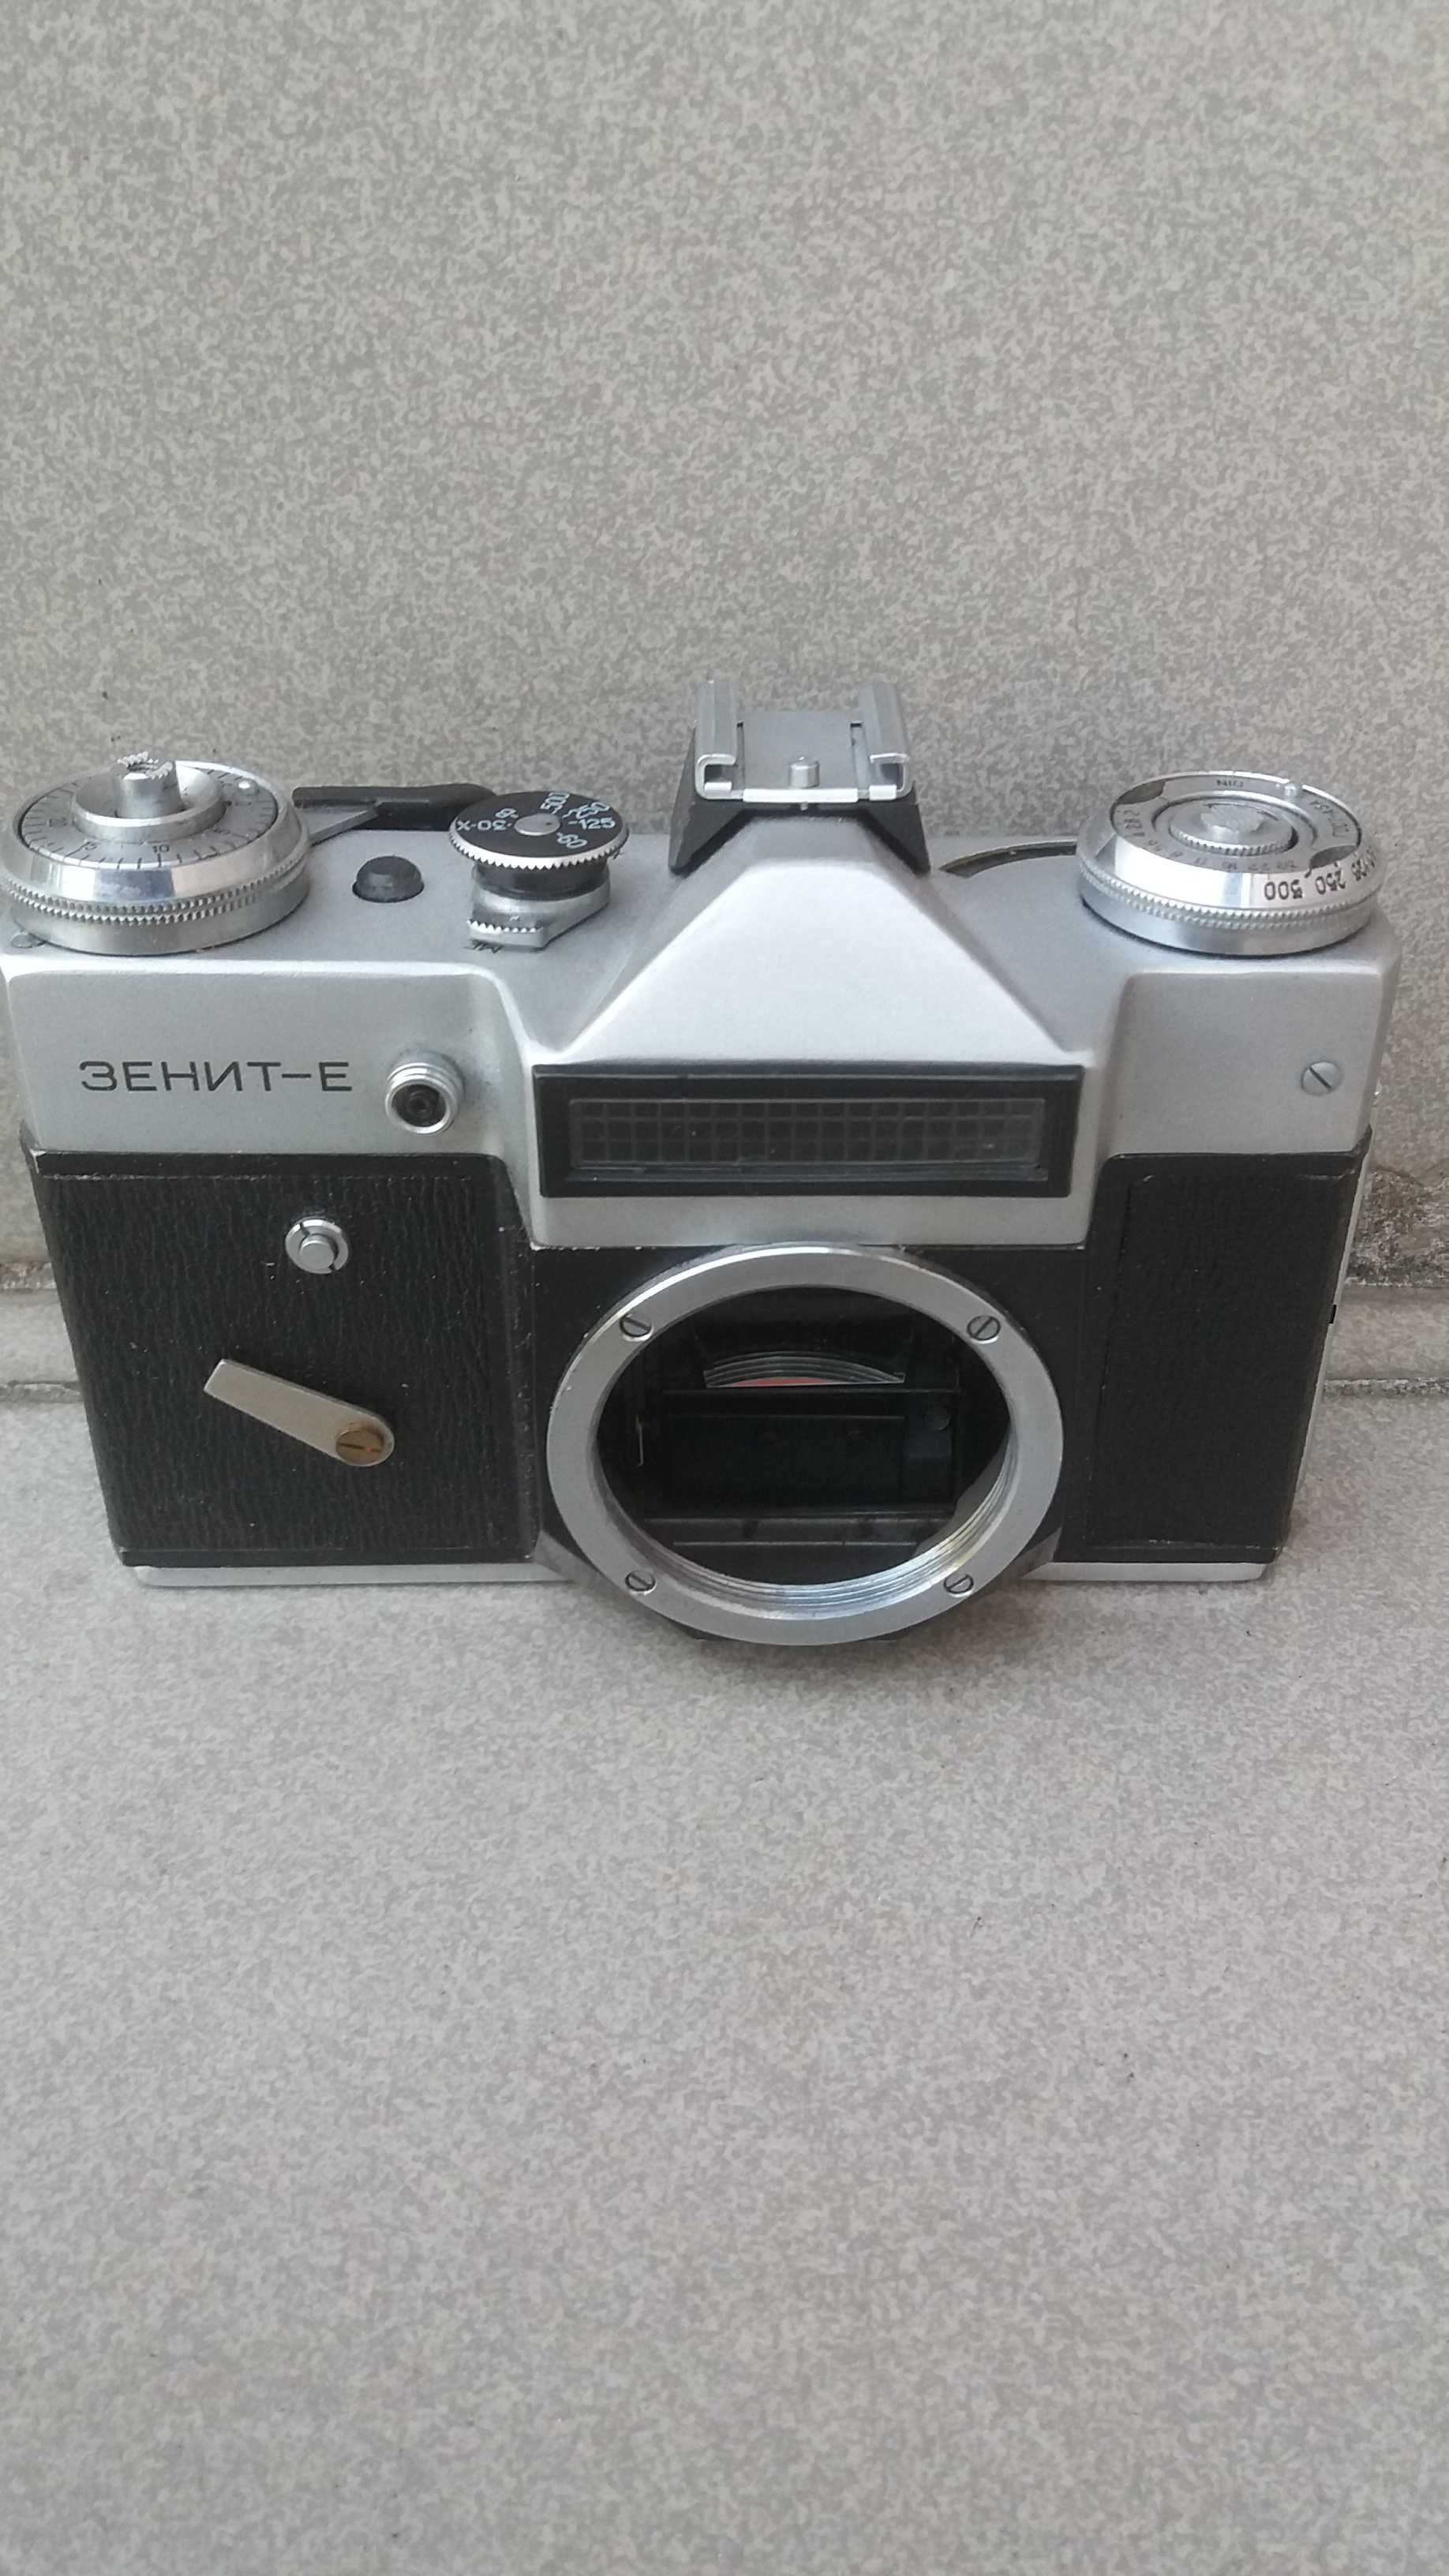 1980-te   Zenit E  aparat foto. ,  made in CCCP